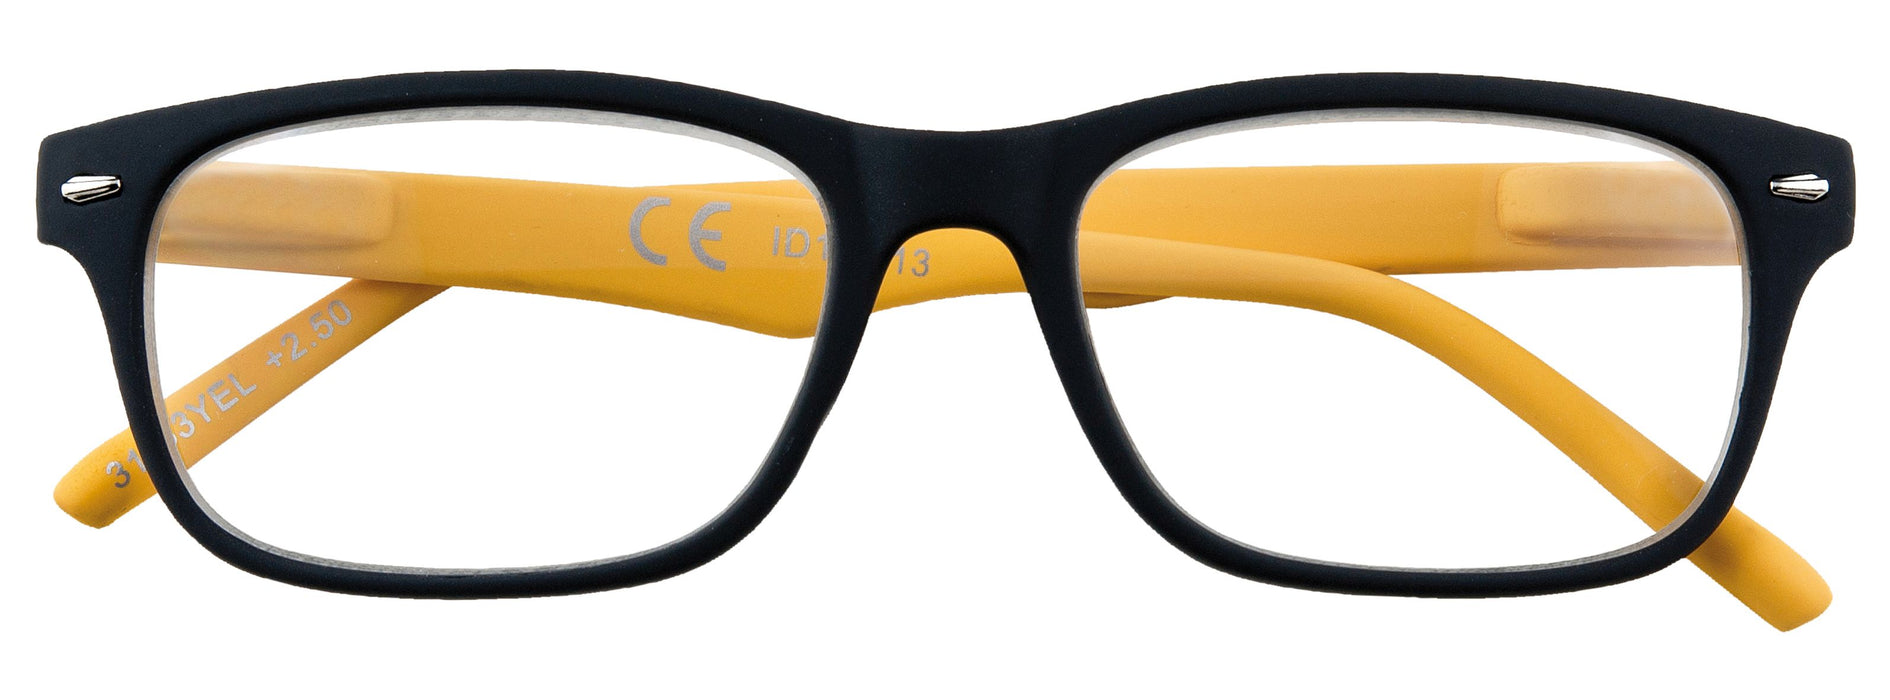 ZIPPO occhiali da lettura +3.50 31Z-B3-YEL350